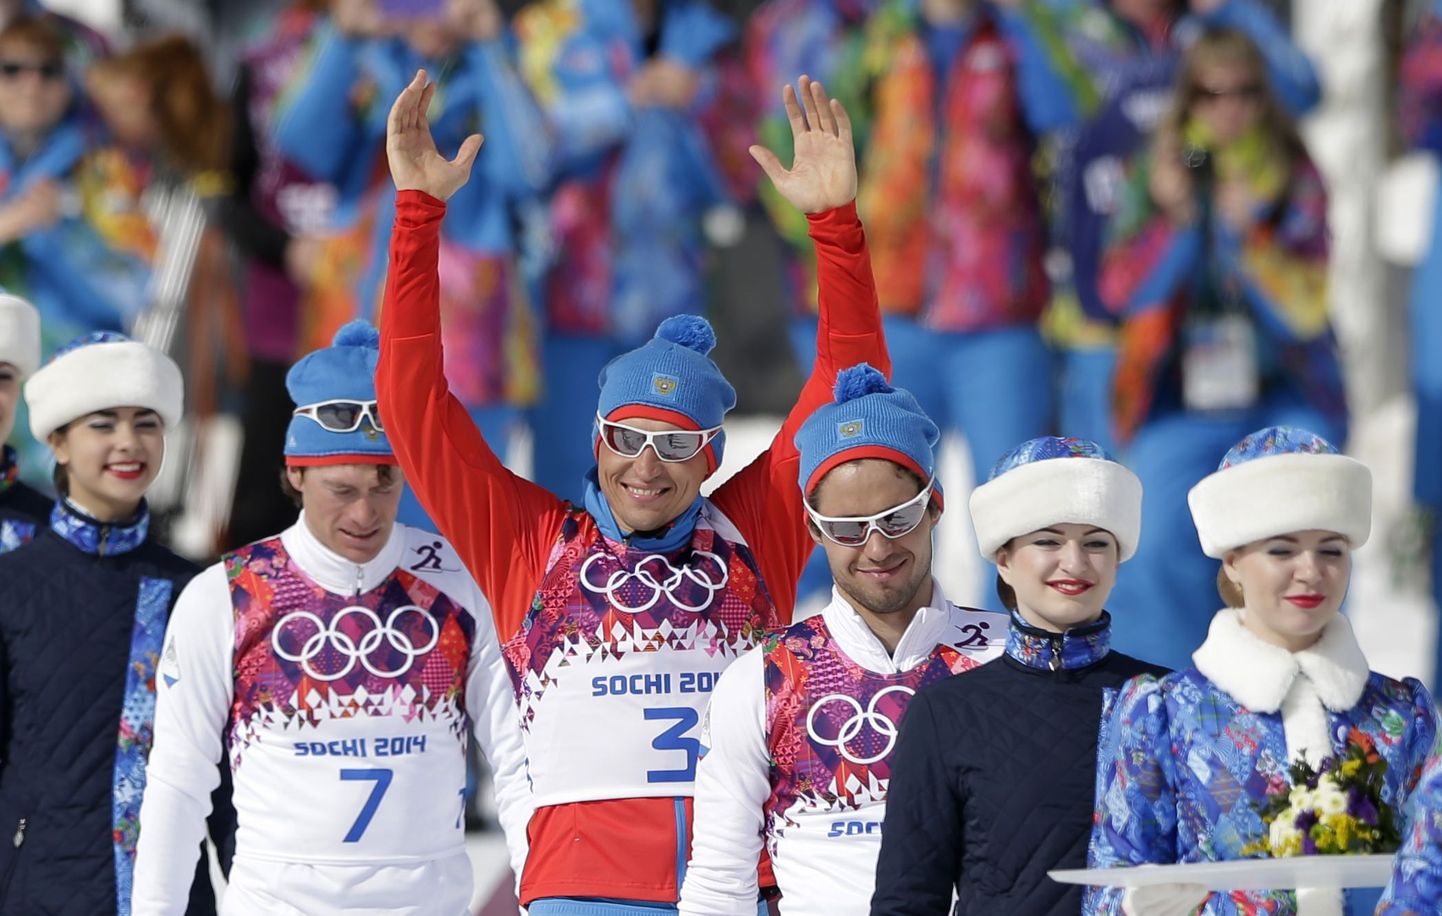 Venelased teenisid meeste 50 km suusasõidus kolmikvõidu ja tagasid medalitabelis esikoha.